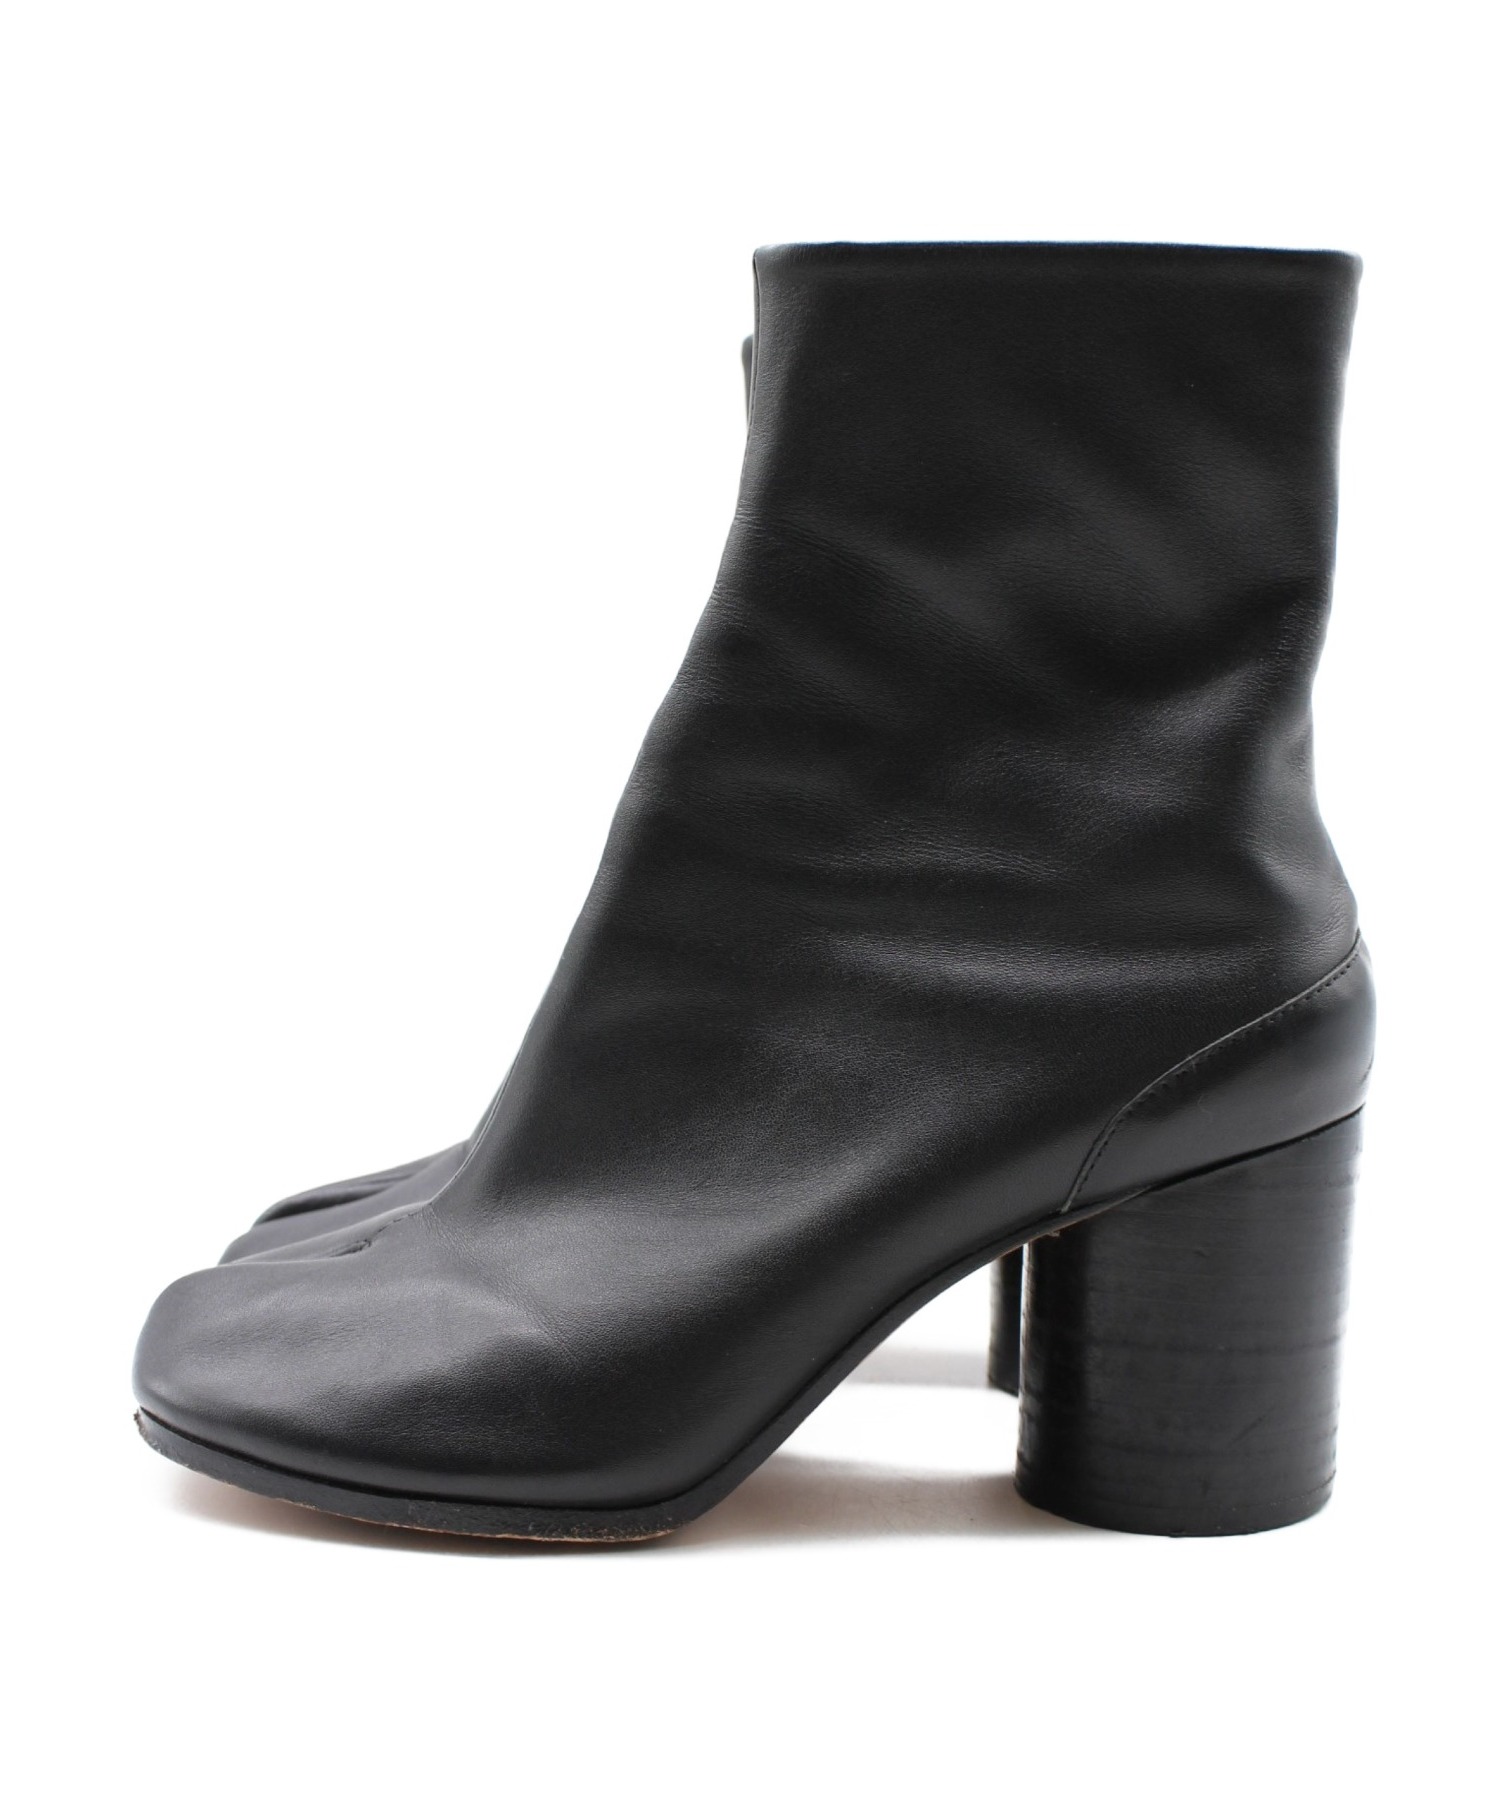 足袋ブーツ Maison Margiela 36.5 黒 ブラックタビブーツ - ブーツ